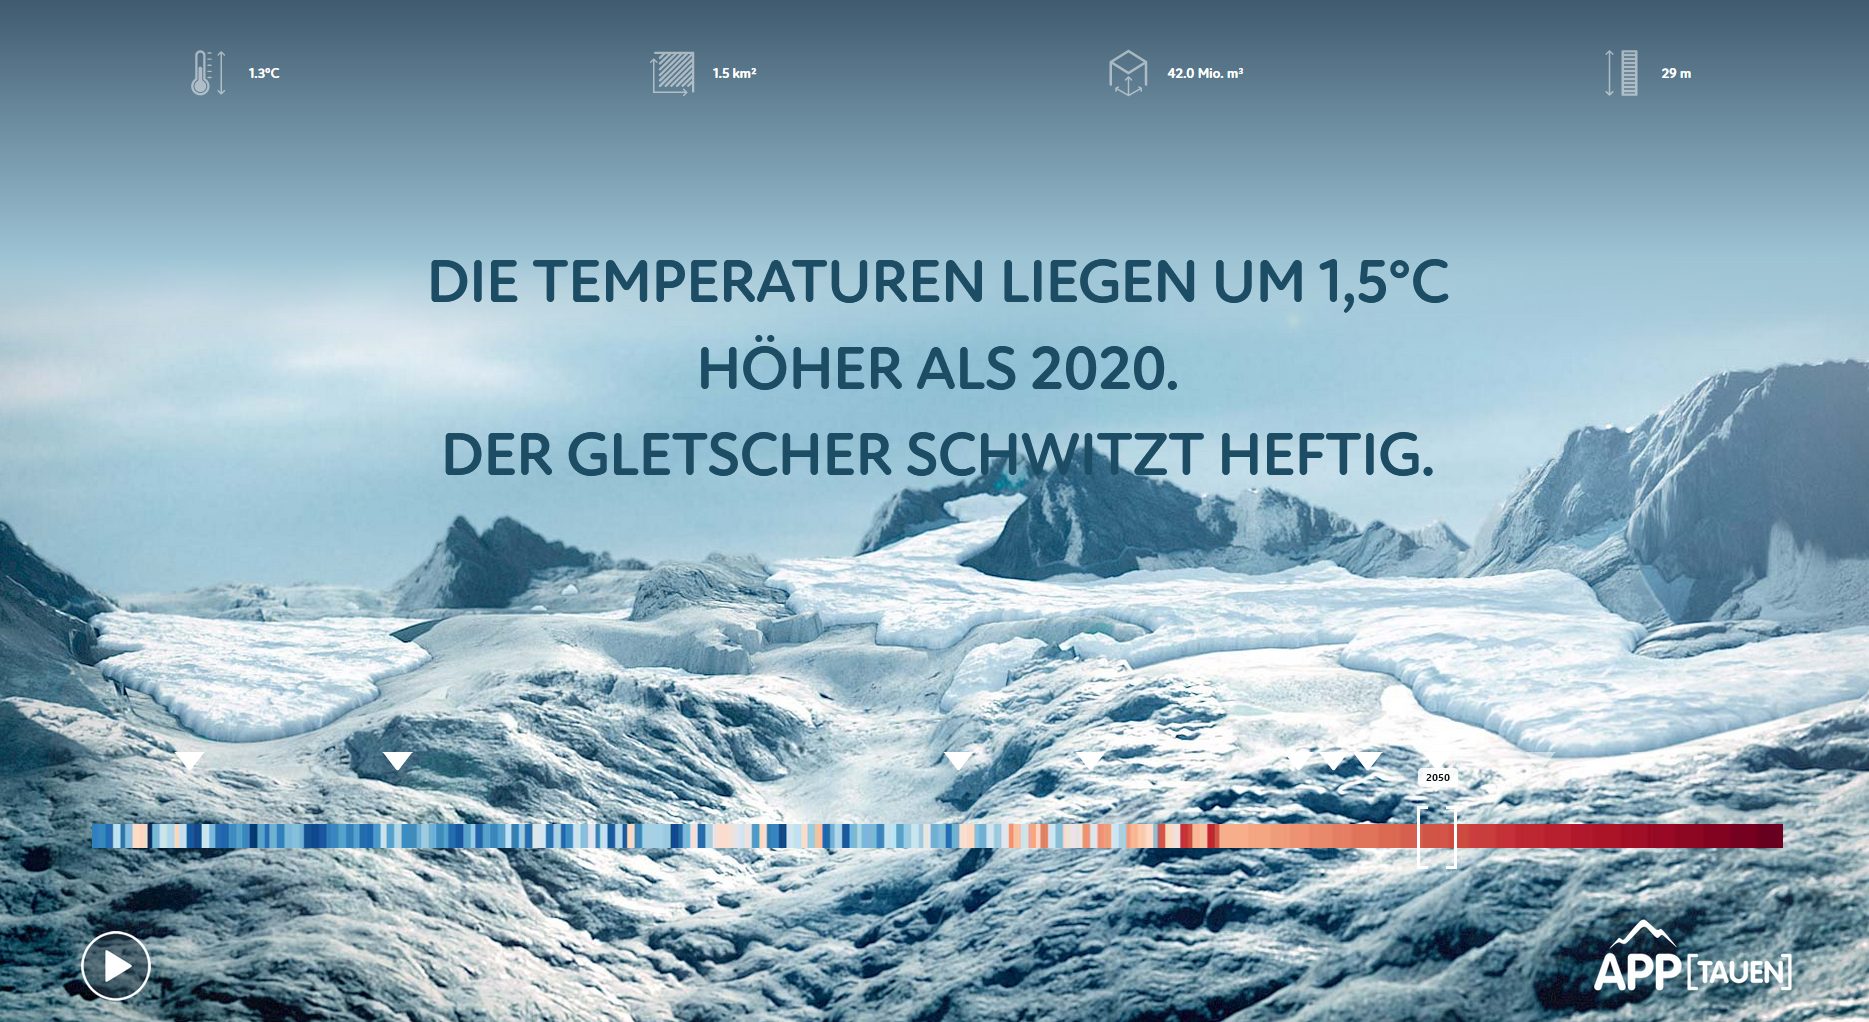 Momentaufnahme des Hallstätter Gletschers im Jahr 2050. (Screenshot www.apptauen.at)